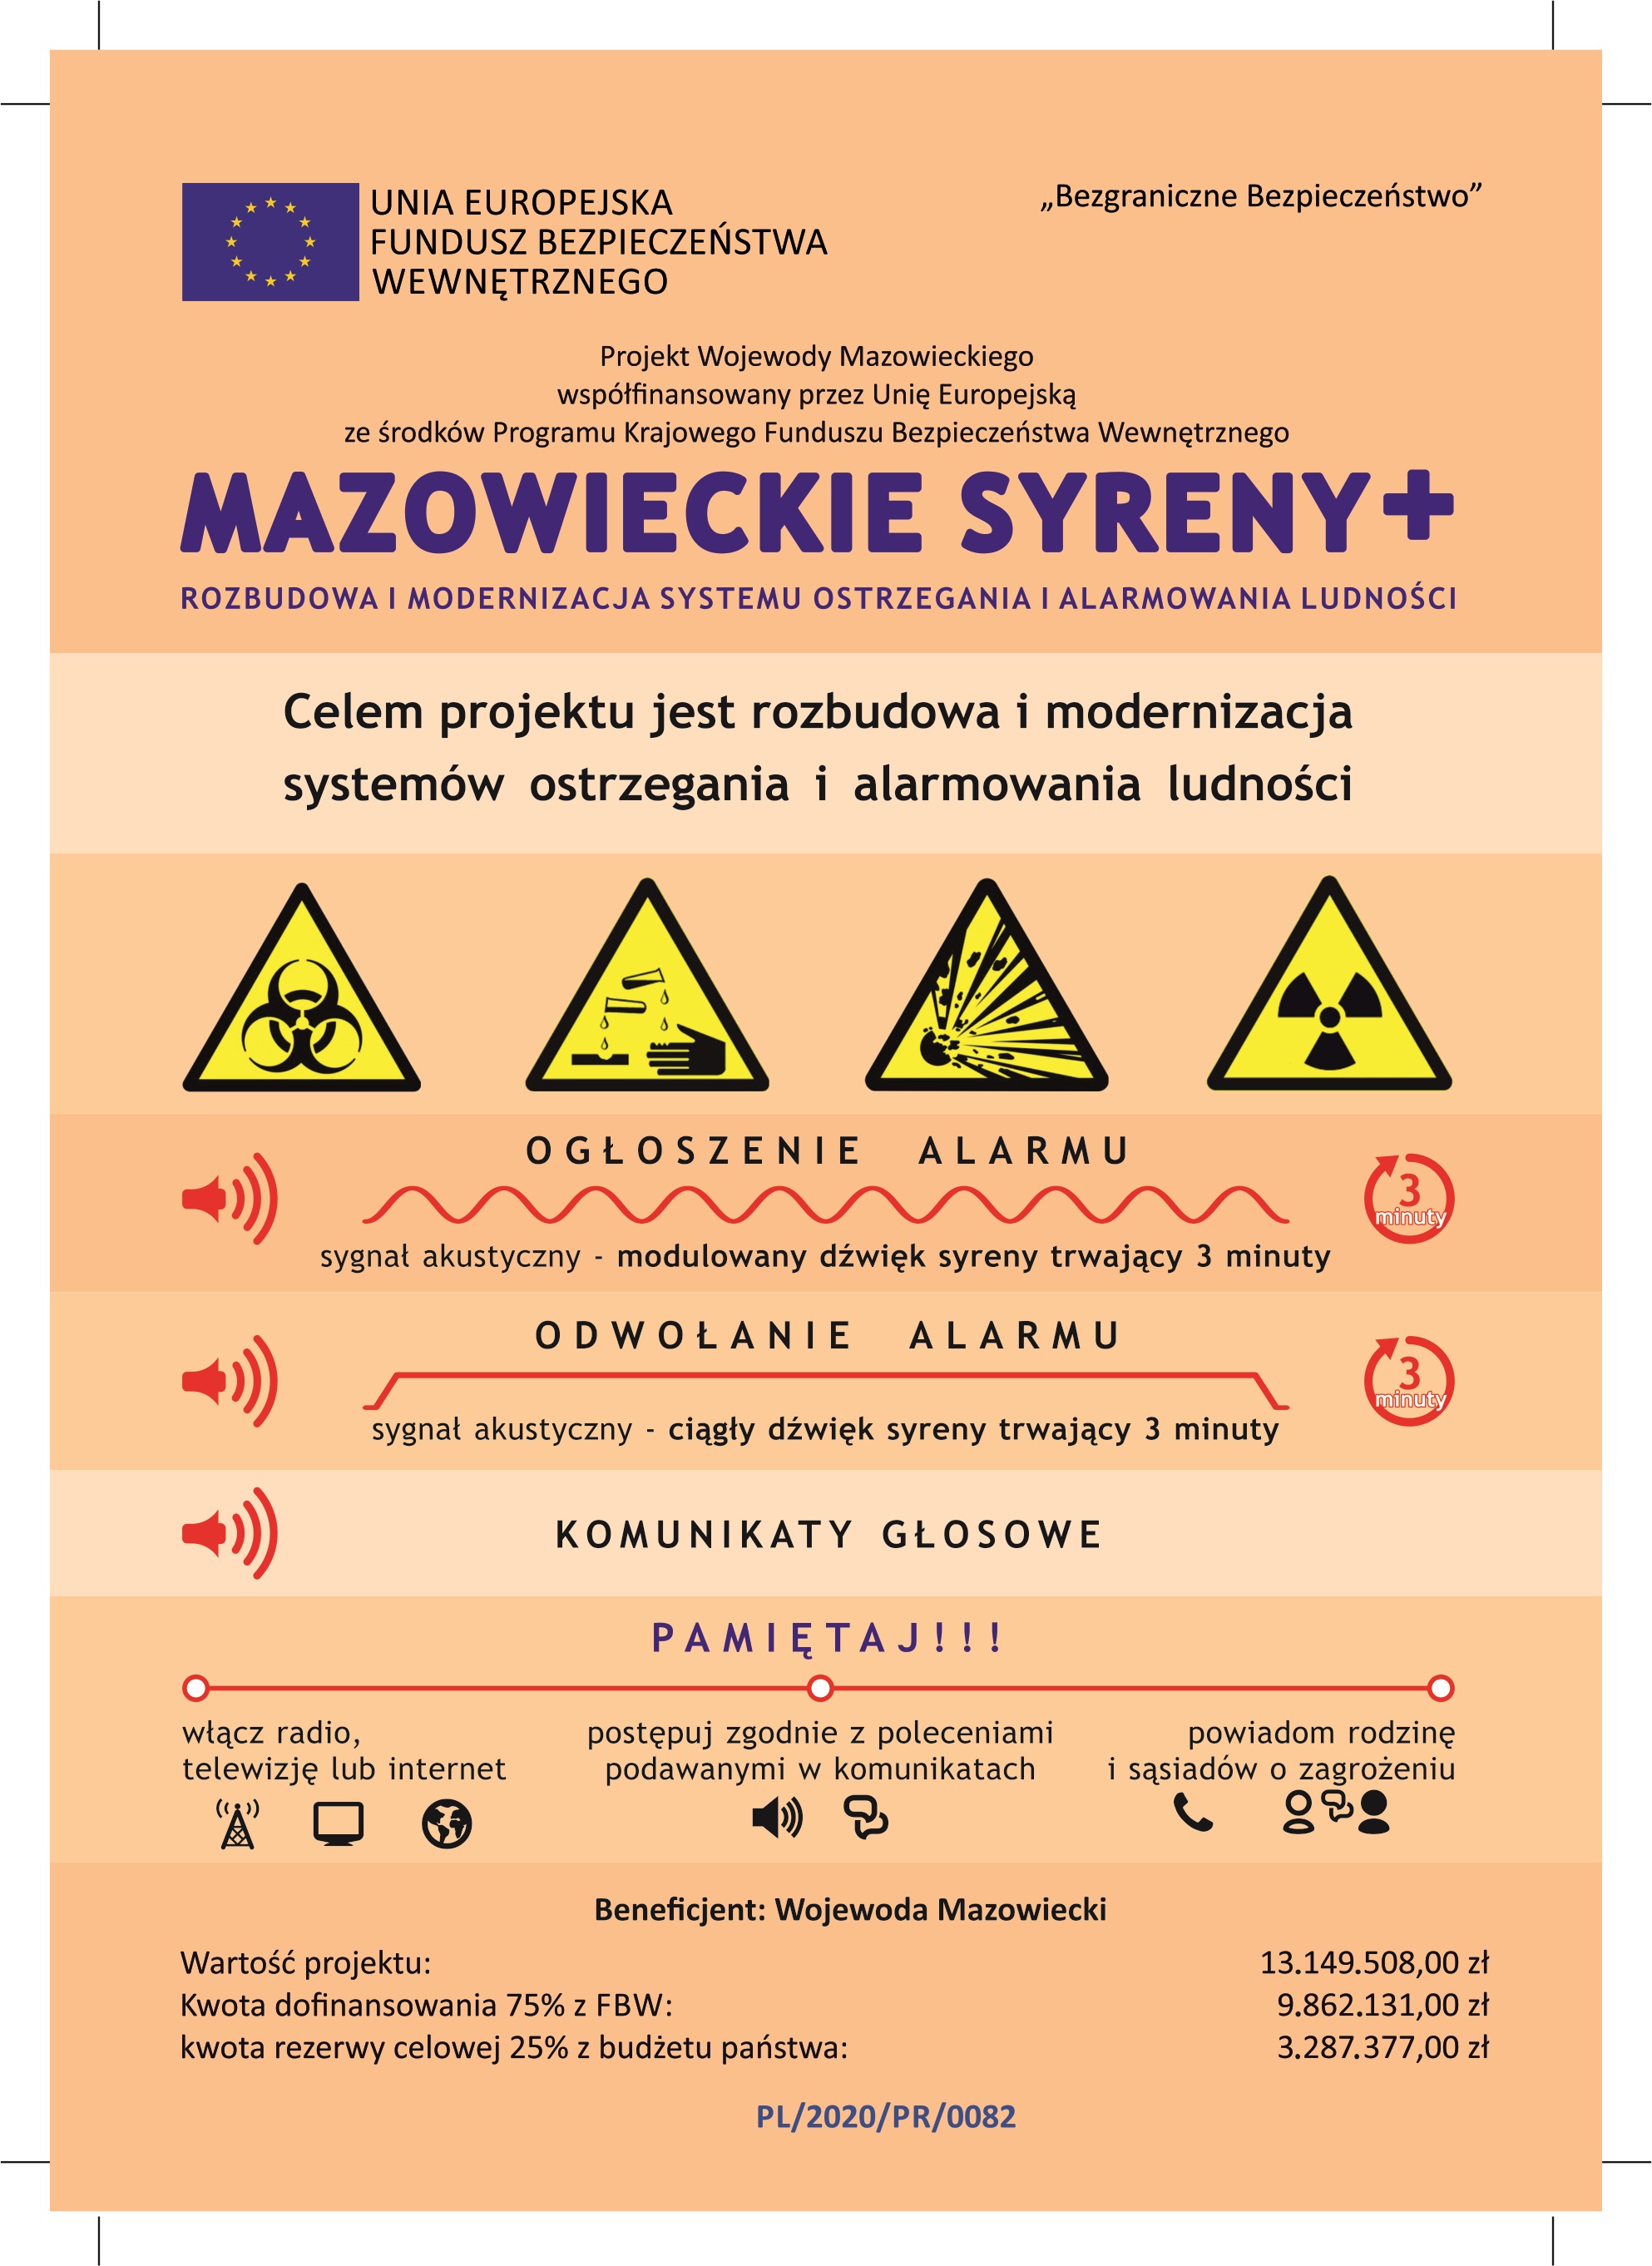 Mazowieckie Syreny+ awers